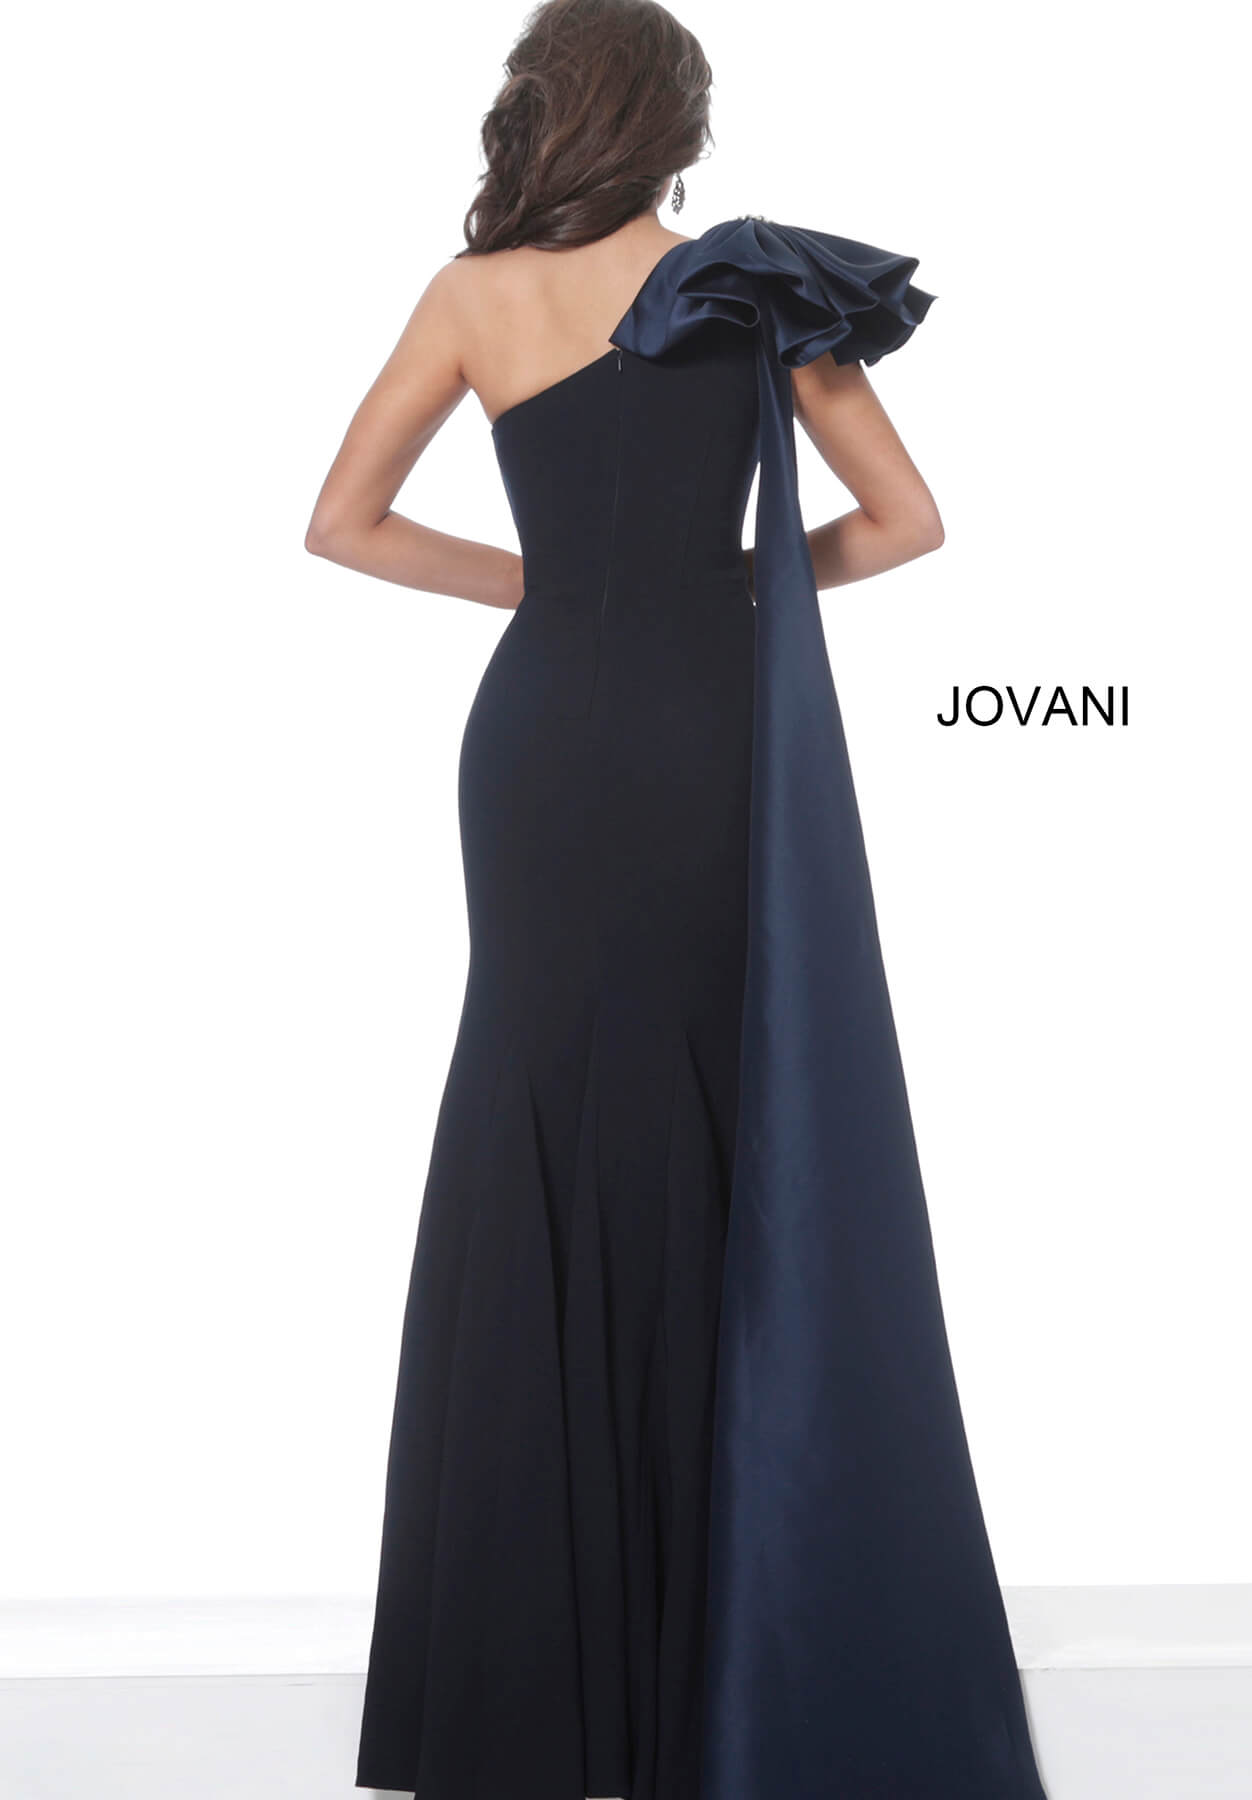 Jovani 1008 one shoulder long fitted dress